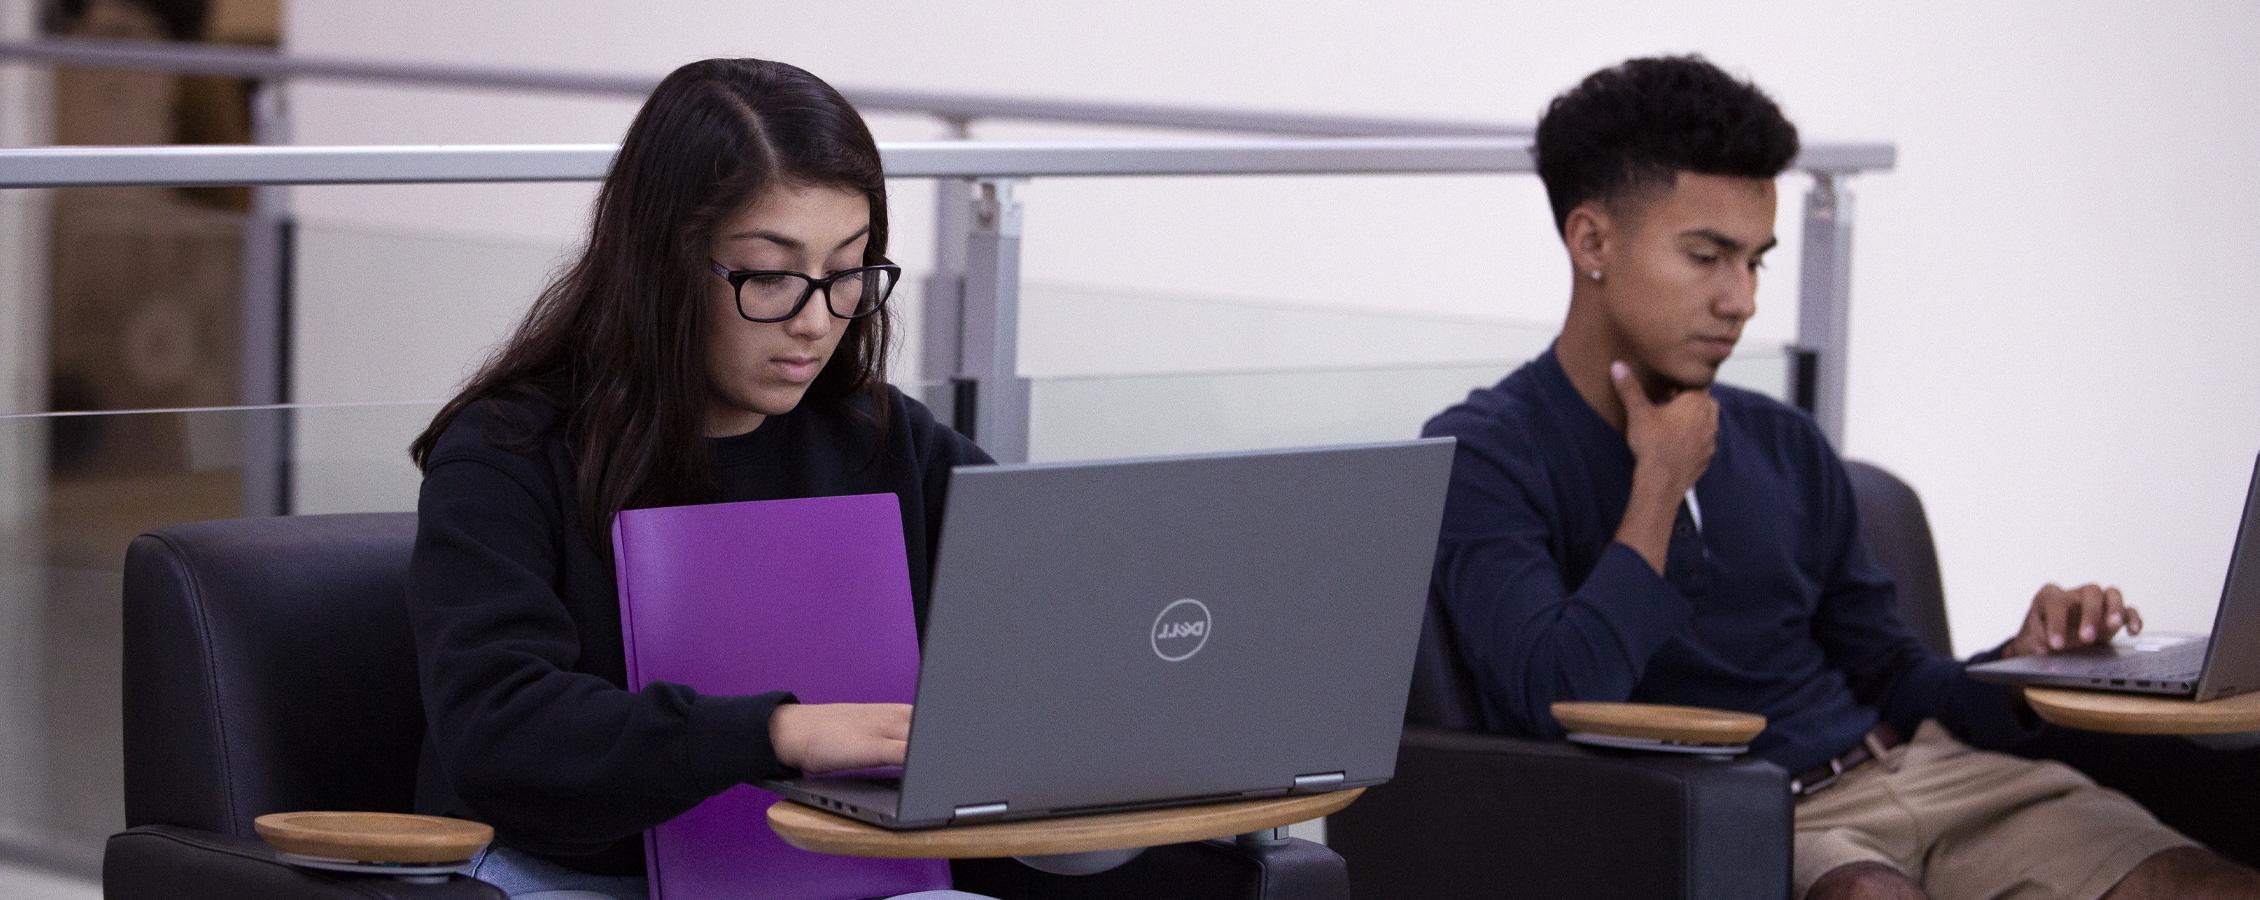 在会议区使用笔记本电脑的两名学生.